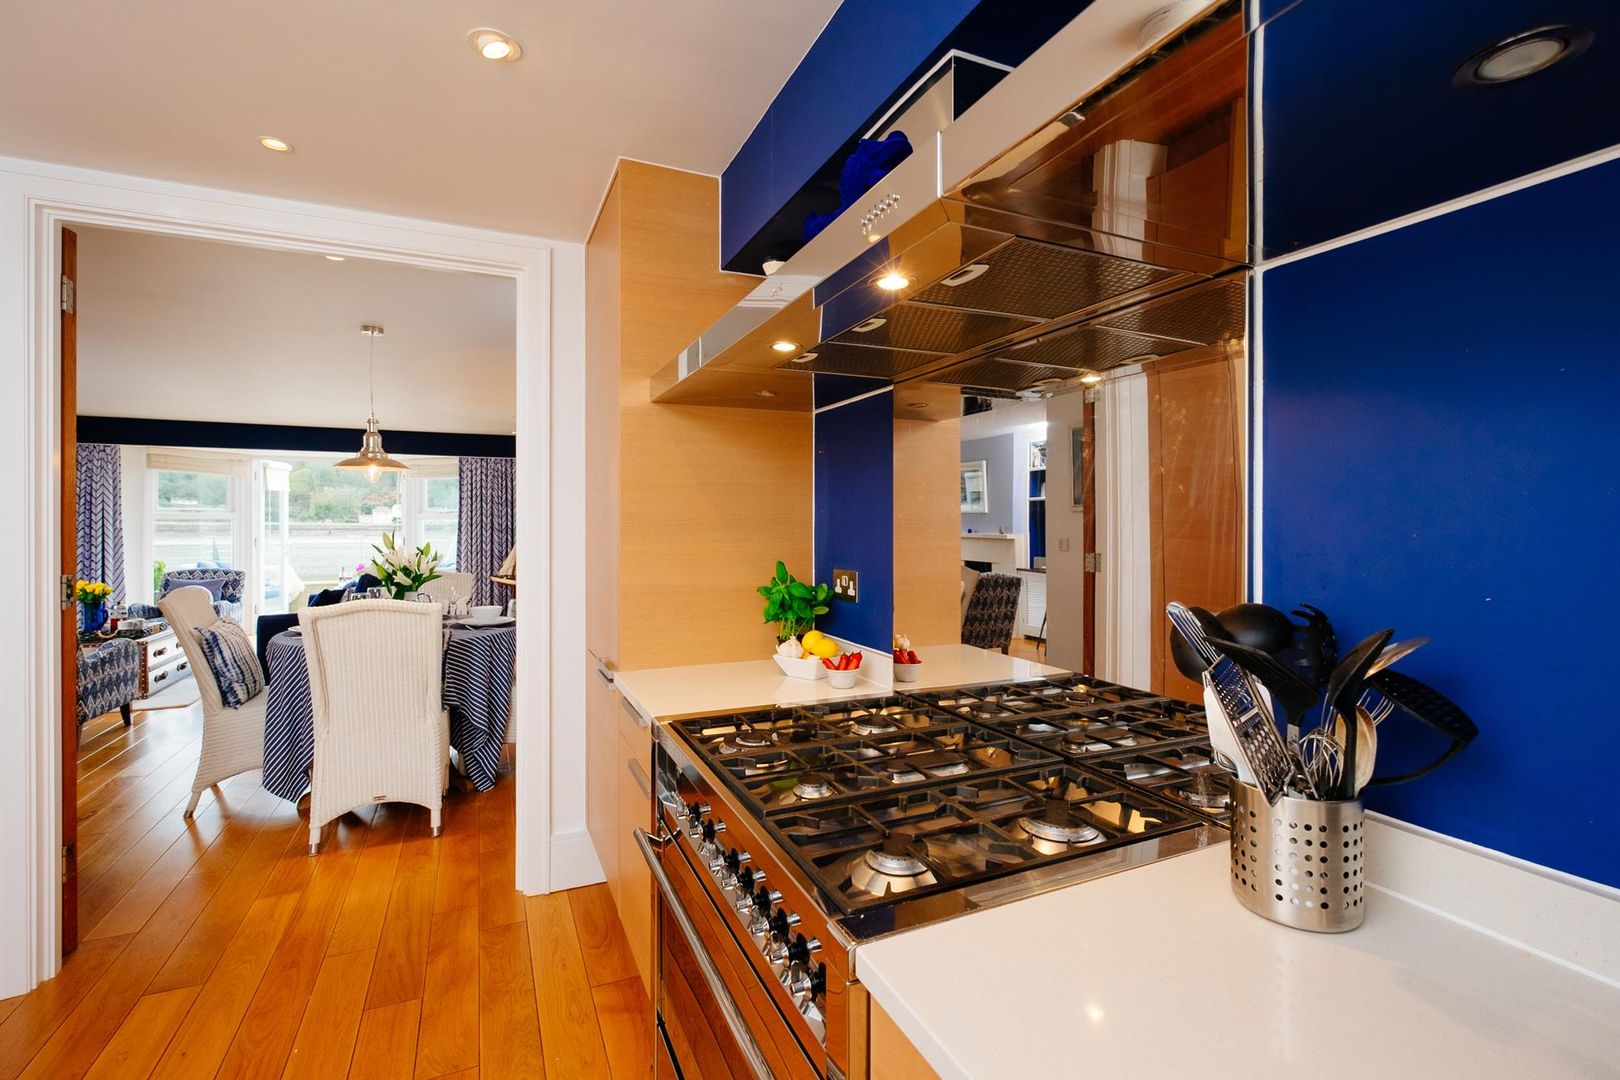 homify Cocinas eclécticas kitchen,blue,wooden floor,holiday home,interior